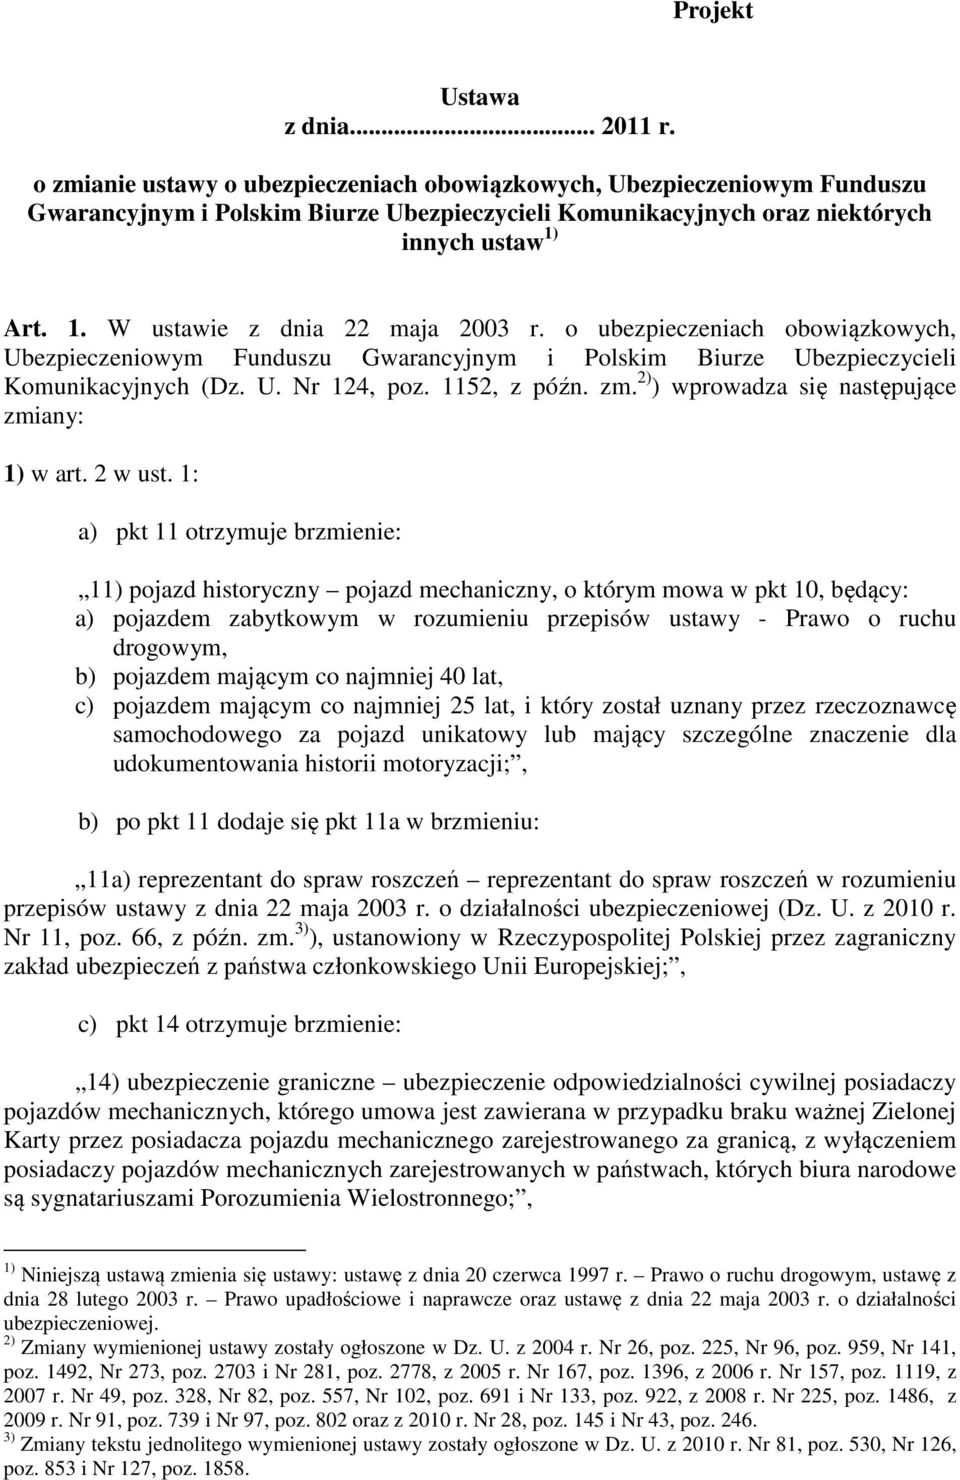 Art. 1. W ustawie z dnia 22 maja 2003 r. o ubezpieczeniach obowiązkowych, Ubezpieczeniowym Funduszu Gwarancyjnym i Polskim Biurze Ubezpieczycieli Komunikacyjnych (Dz. U. Nr 124, poz. 1152, z późn. zm.